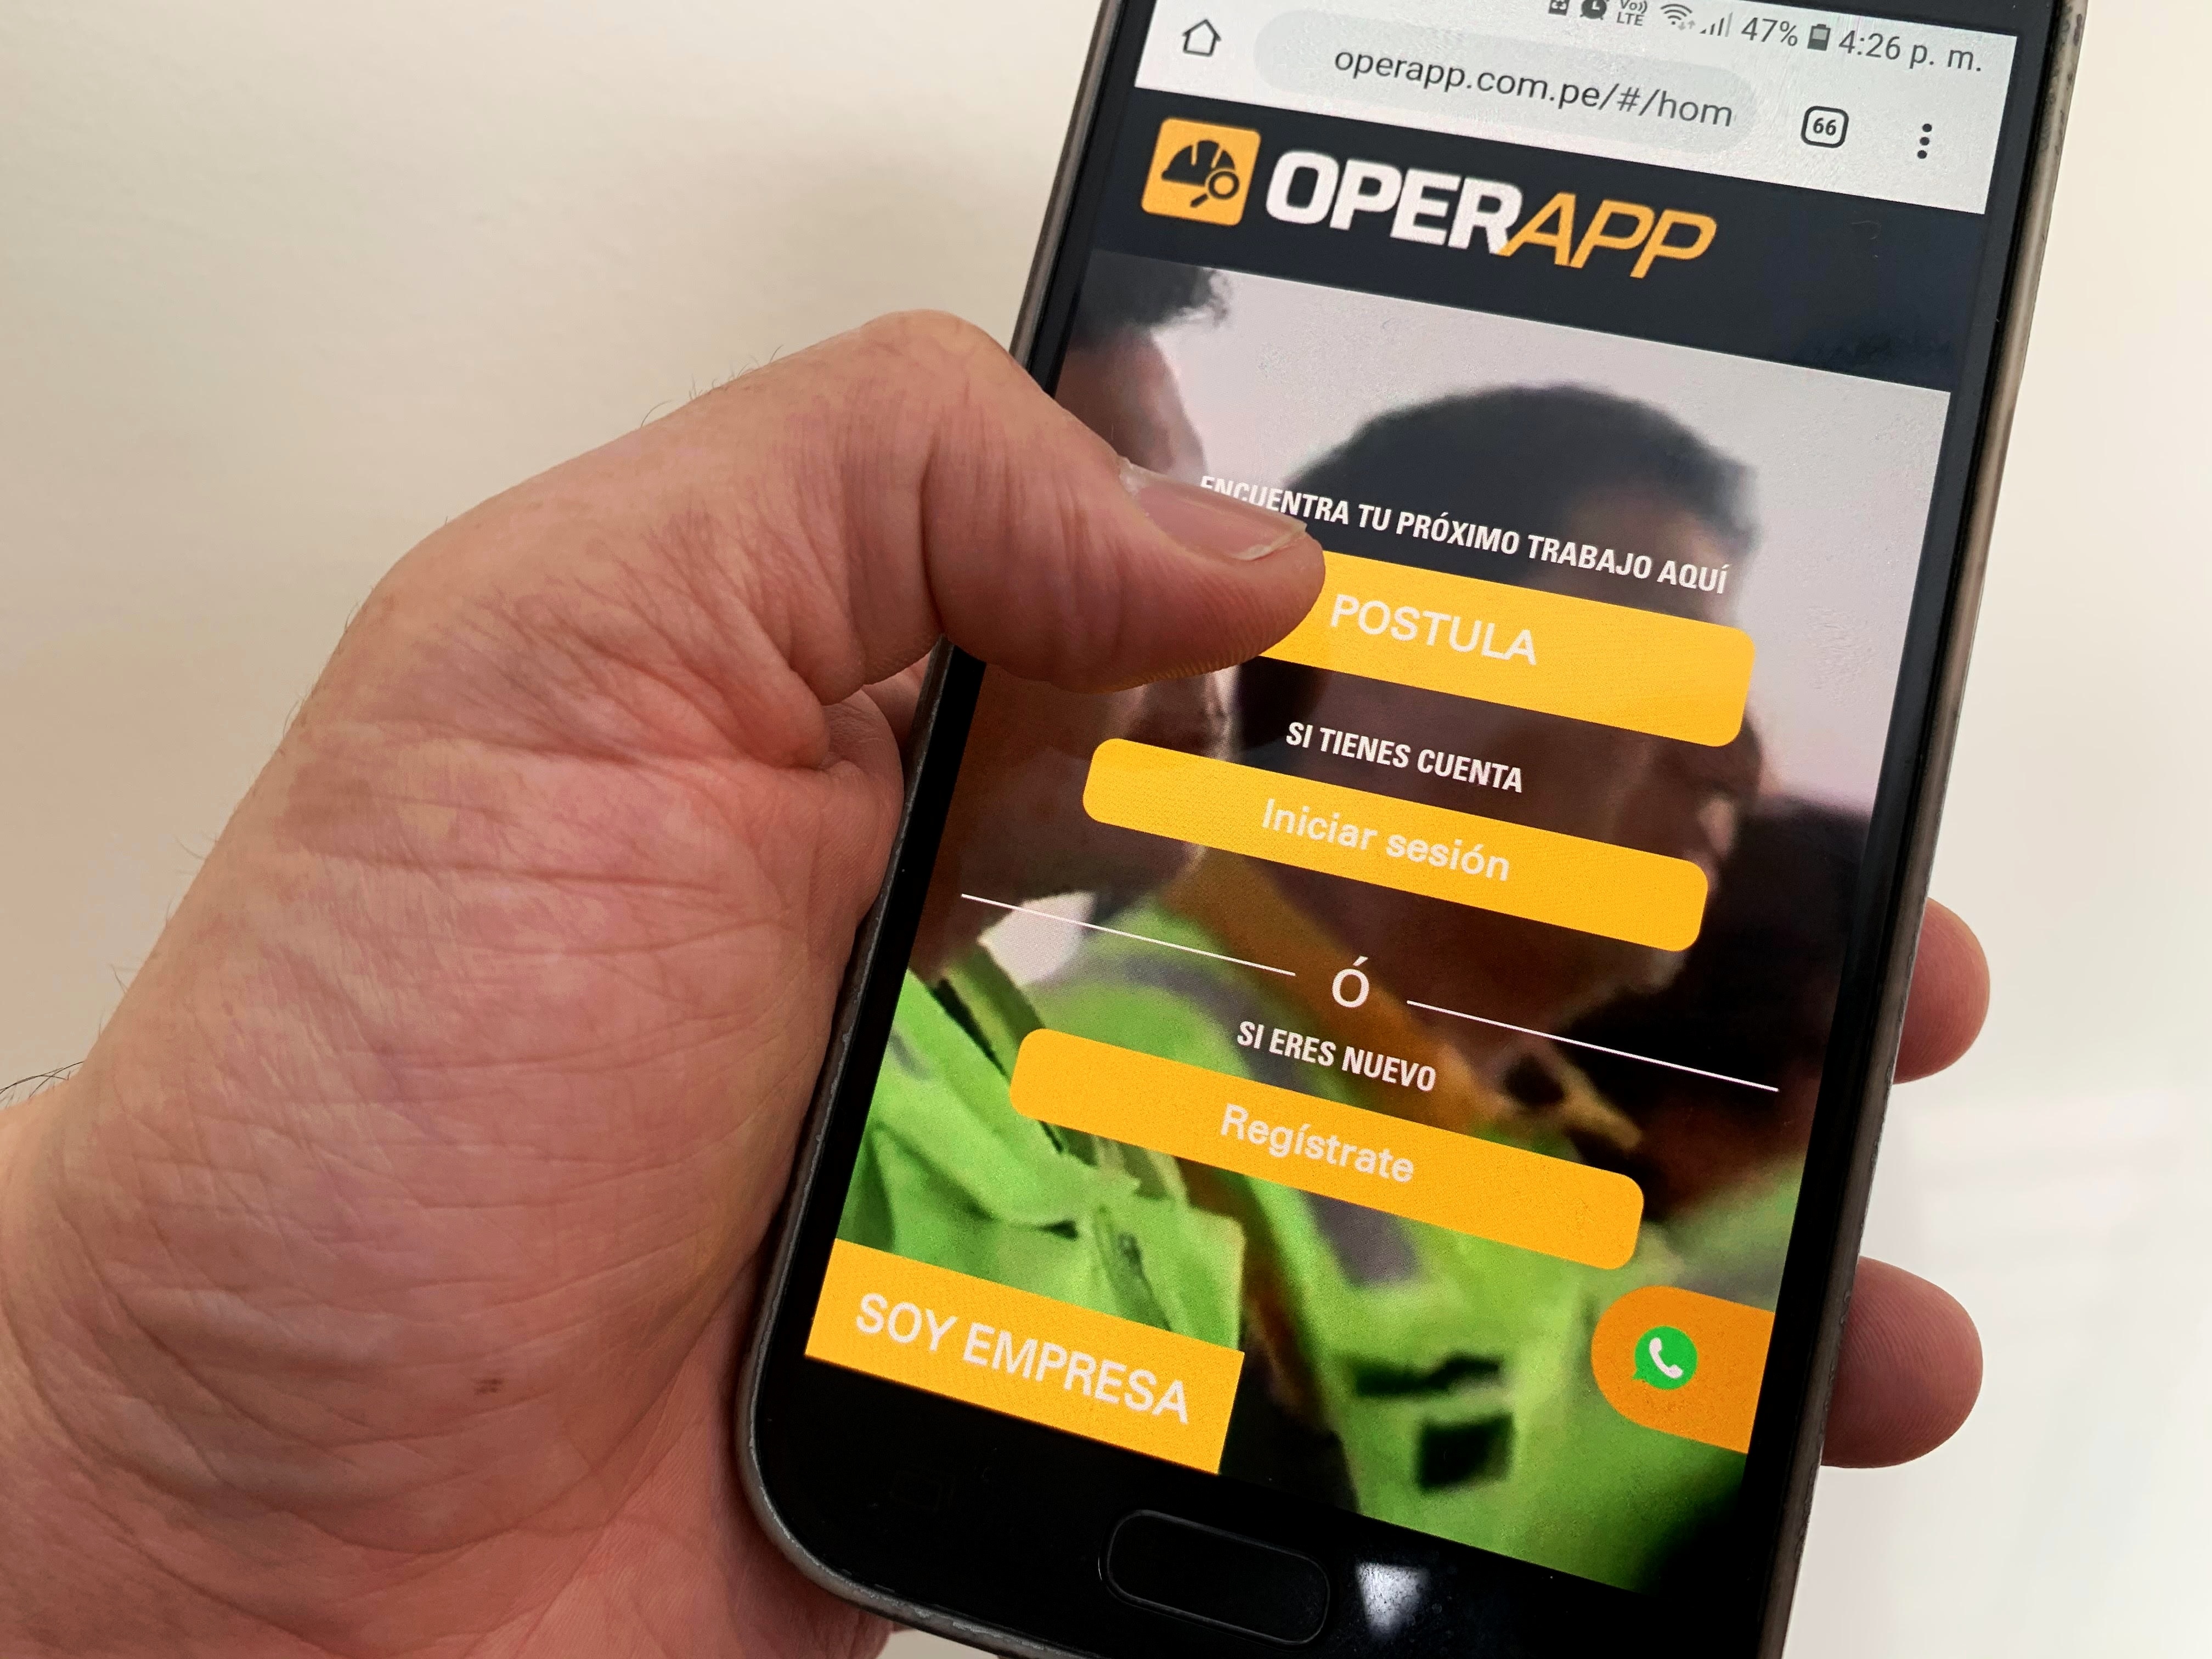 OperApp, único portal de trabajo para operadores, triplica ofertas en su segundo año